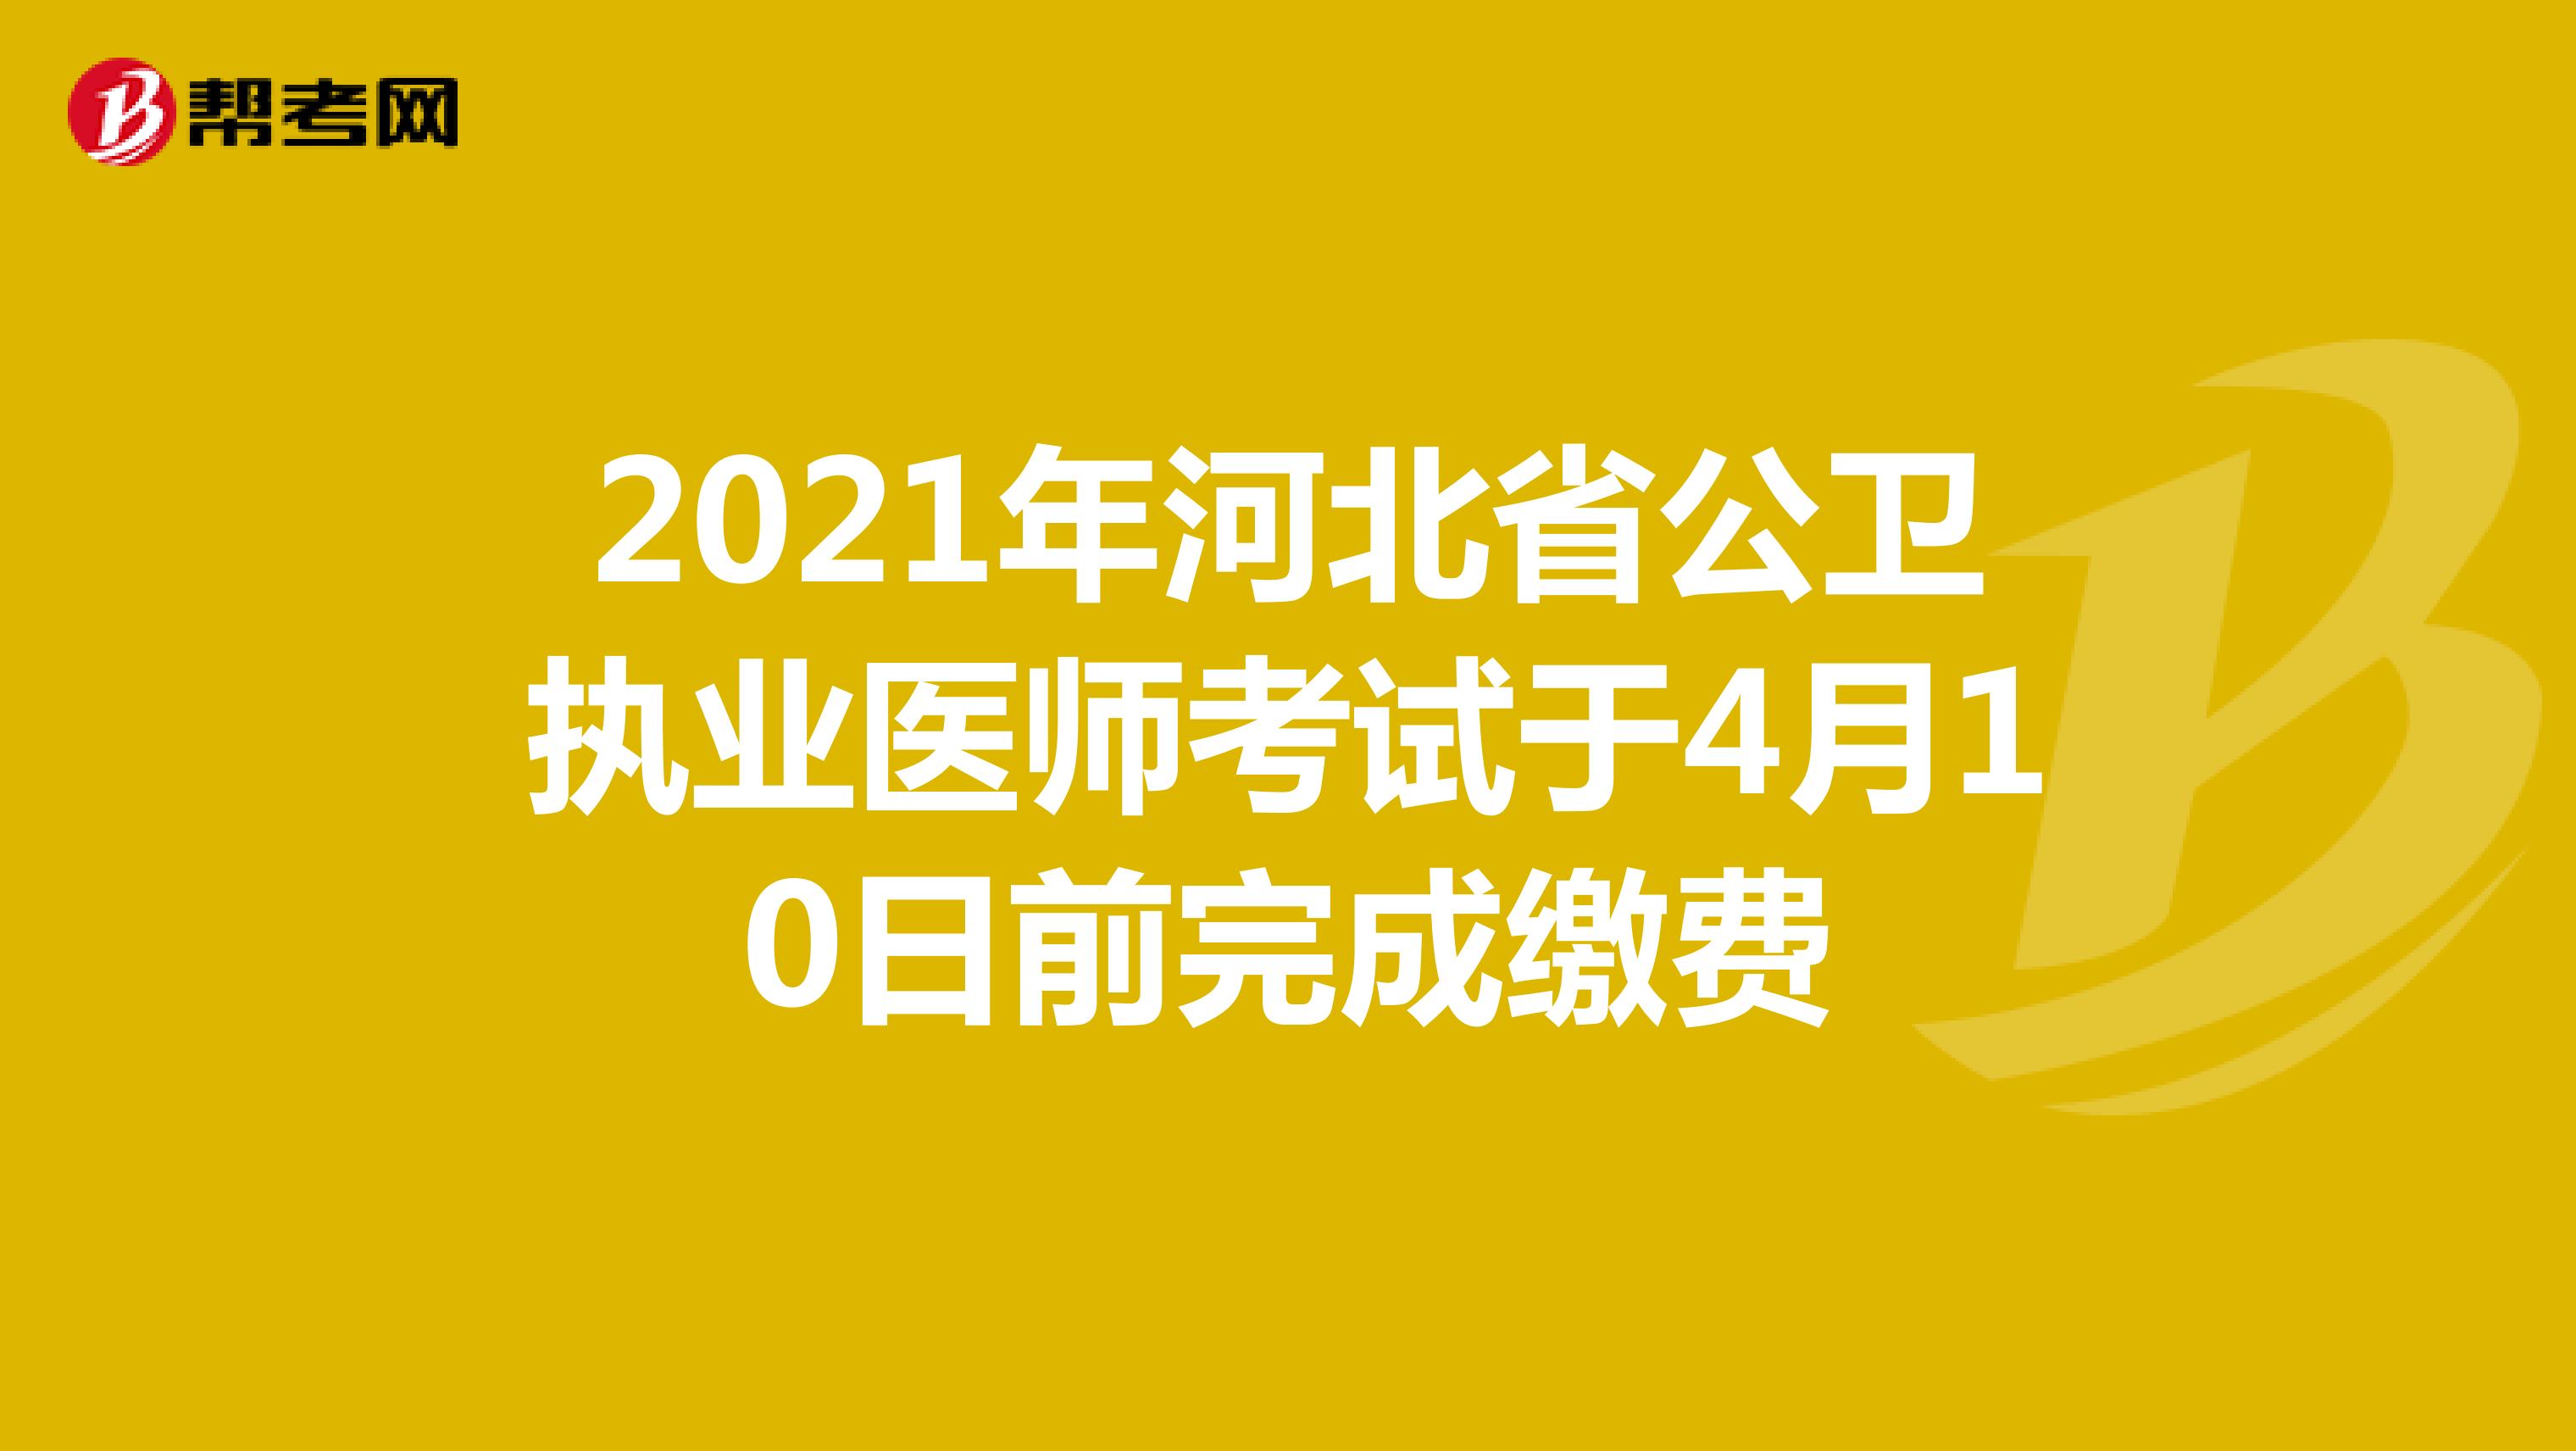 2021年河北省公卫执业医师考试于4月10日前完成缴费